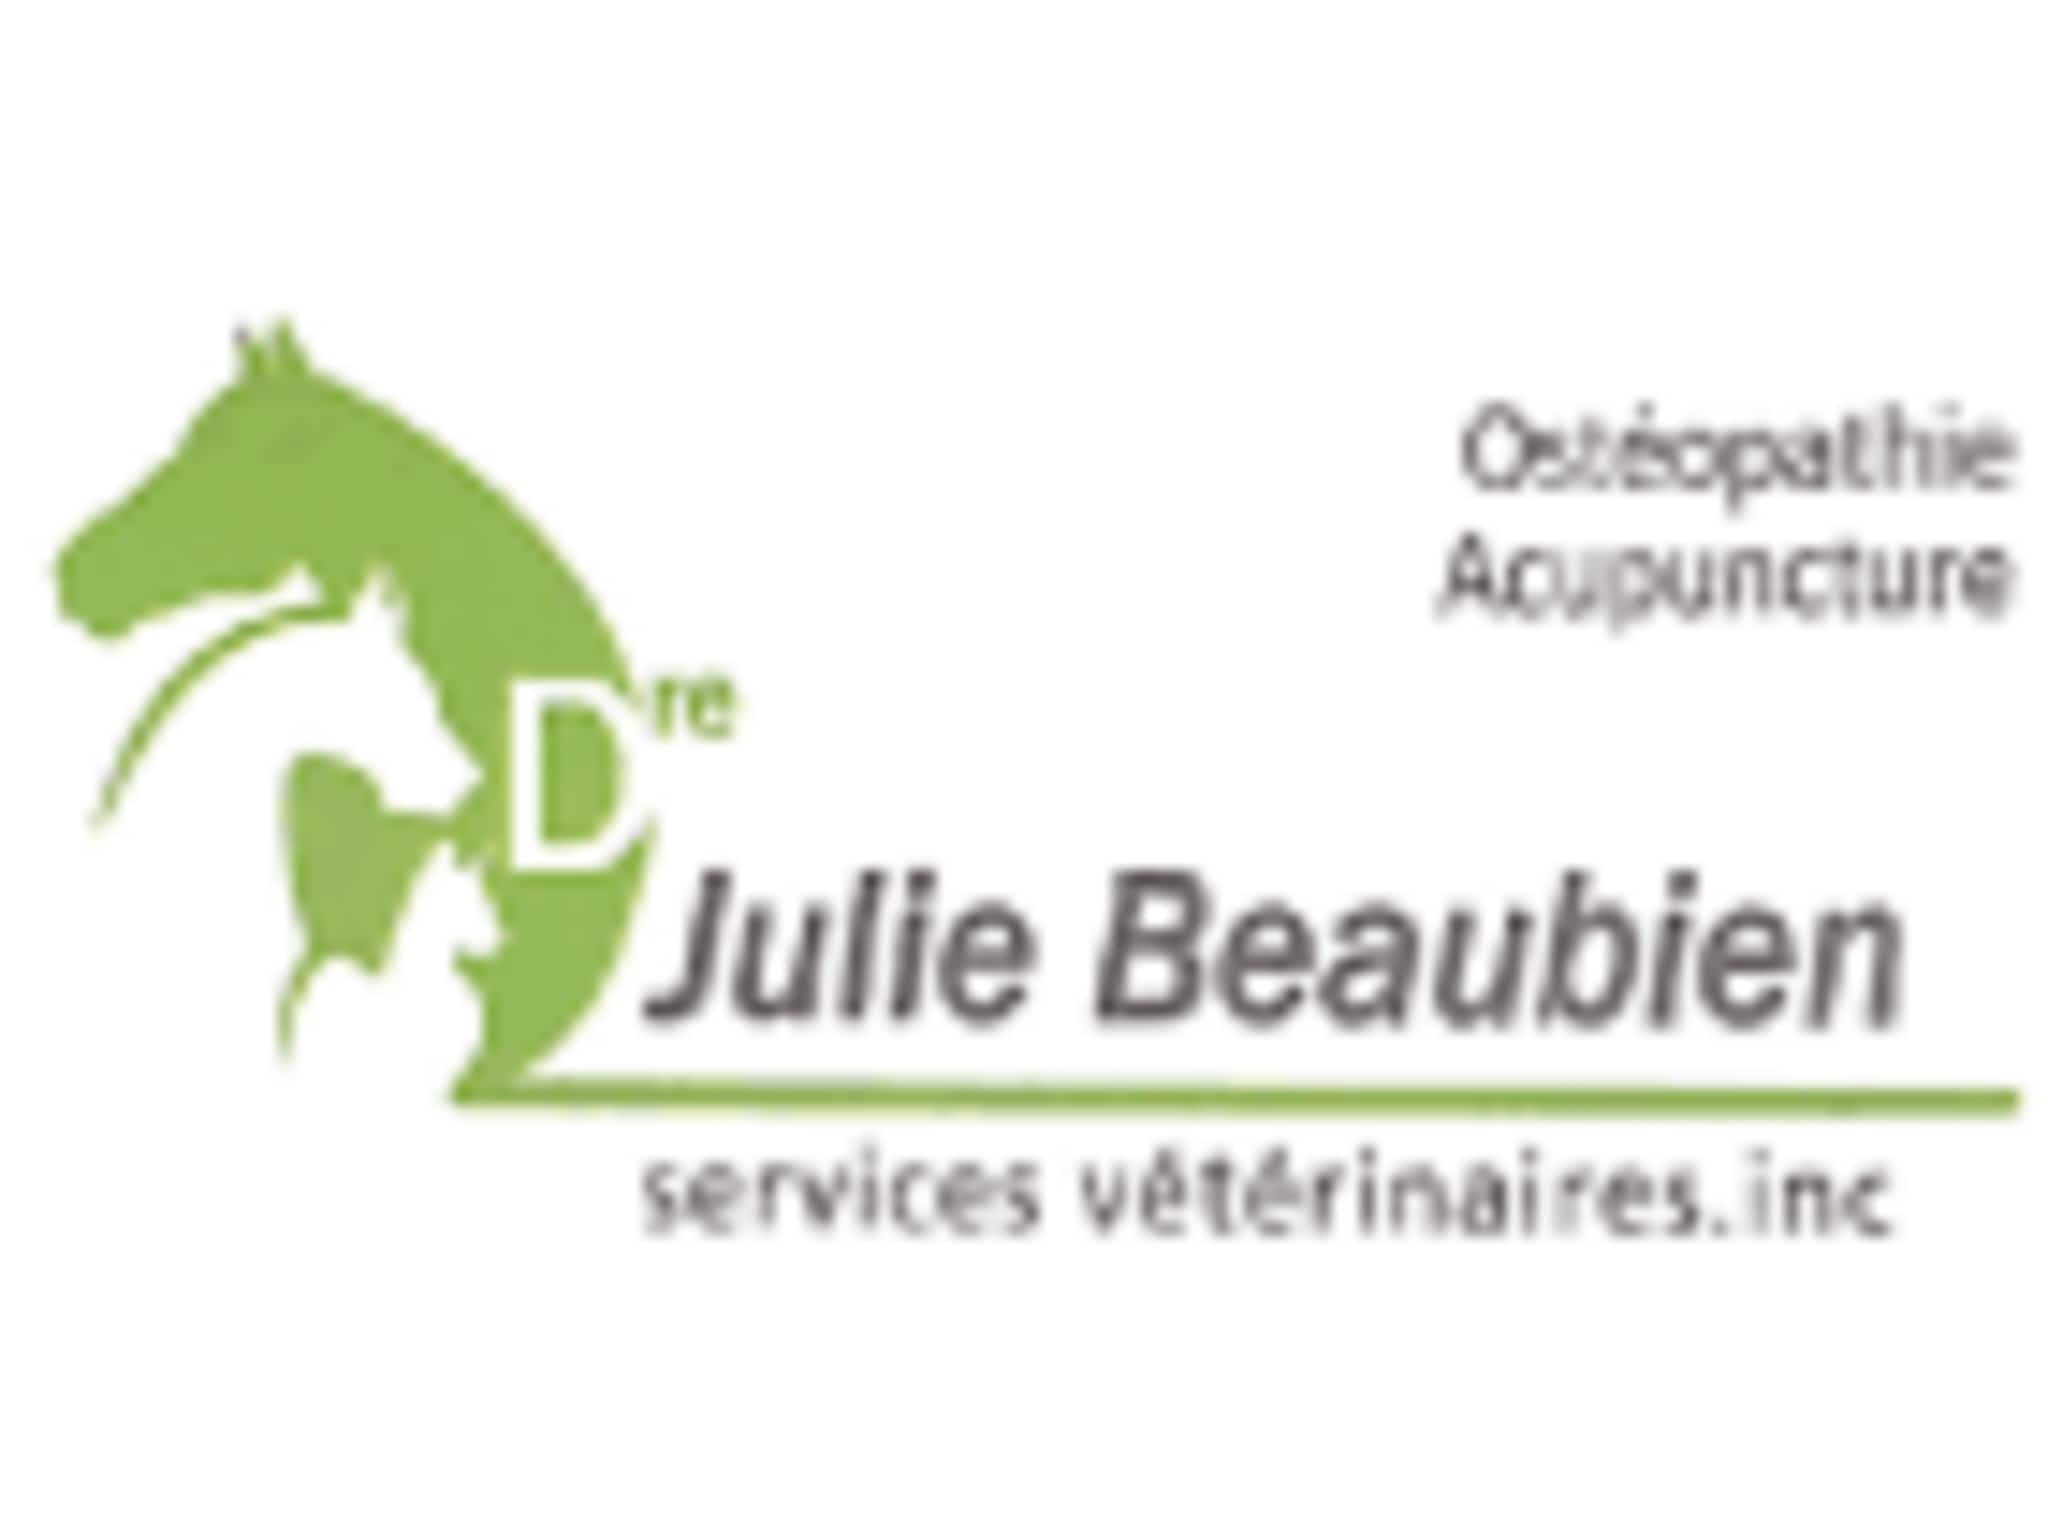 photo Dre Julie Beaubien Services Vétérinaires Inc Vétérinaire